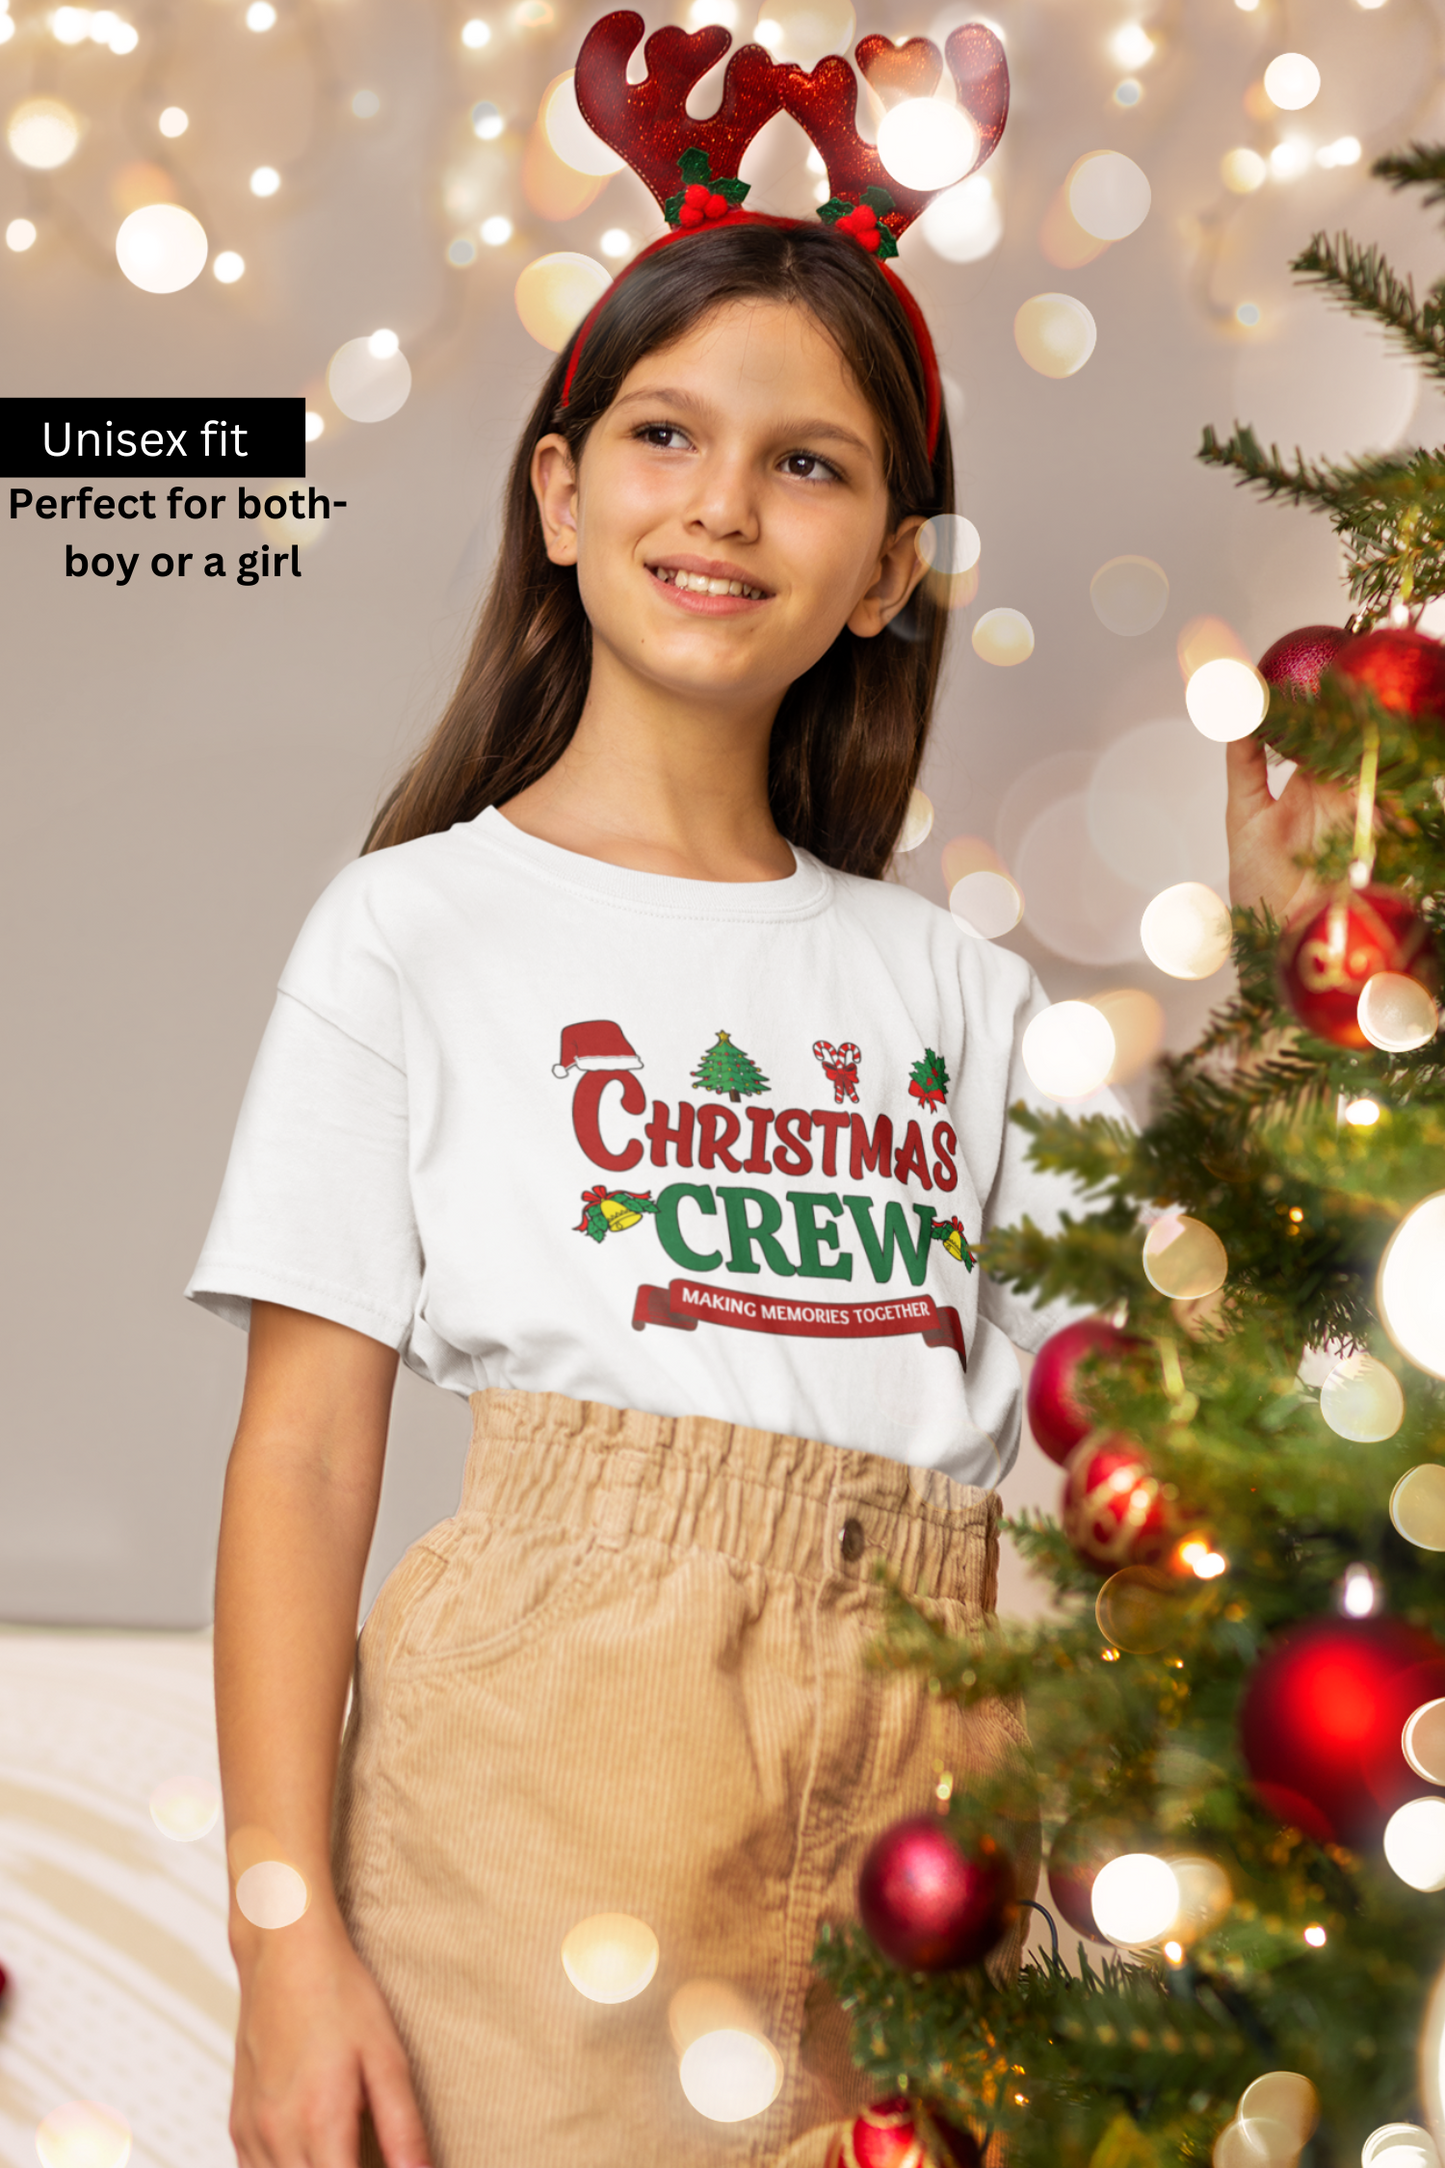 Christmas Crew Kids T-Shirt - nautunkee